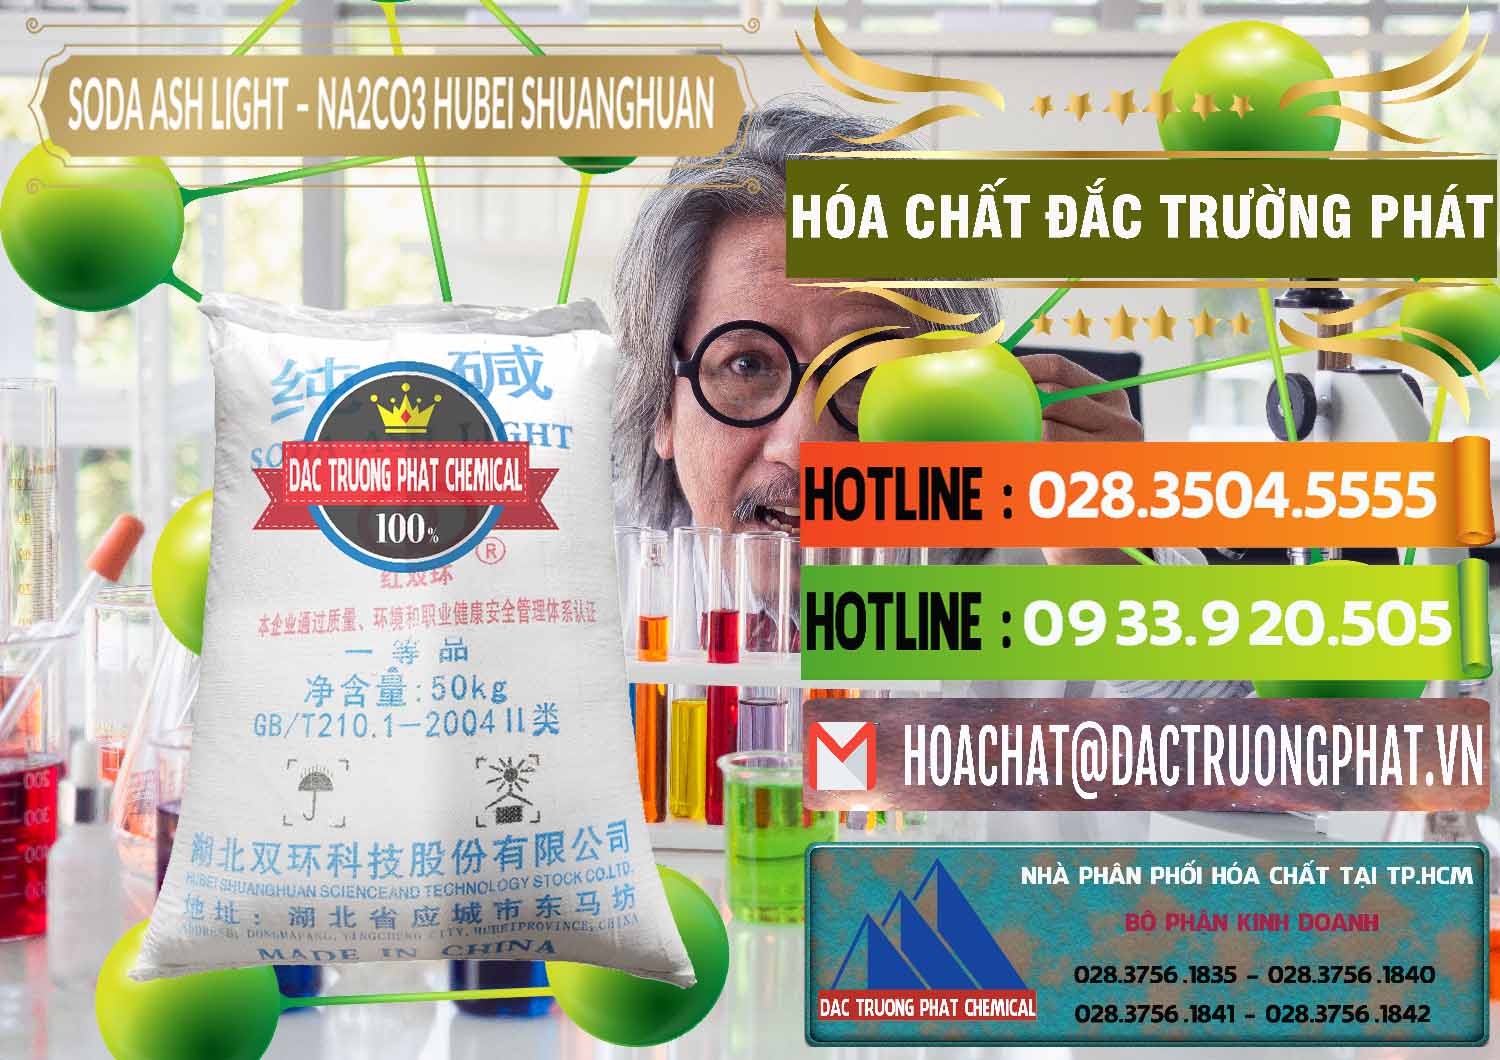 Cty chuyên kinh doanh & bán Soda Ash Light - NA2CO3 2 Vòng Tròn Hubei Shuanghuan Trung Quốc China - 0130 - Nhập khẩu & phân phối hóa chất tại TP.HCM - cungcaphoachat.com.vn